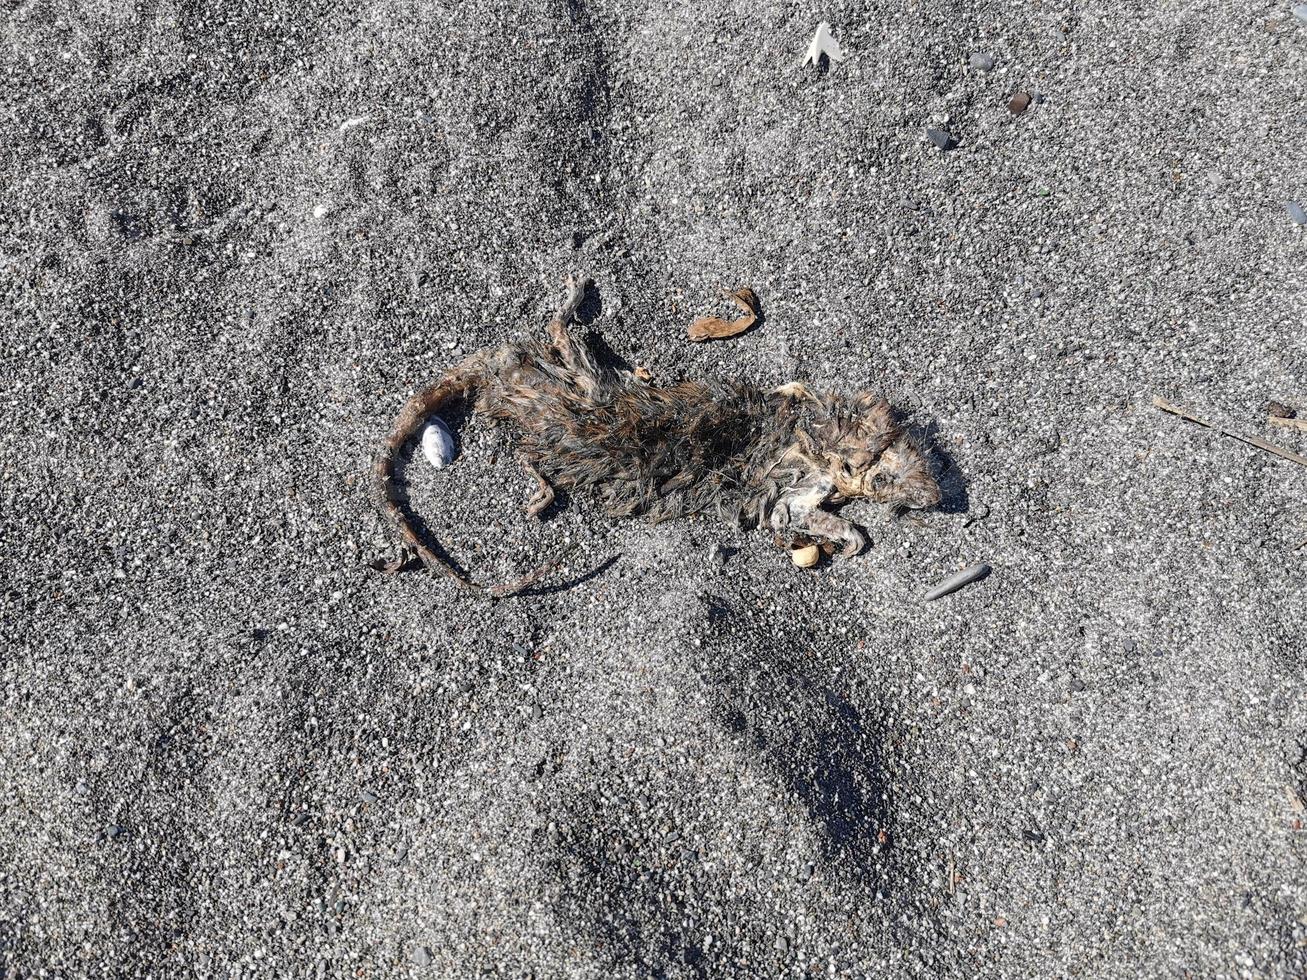 souris morte sur la plage de sable photo